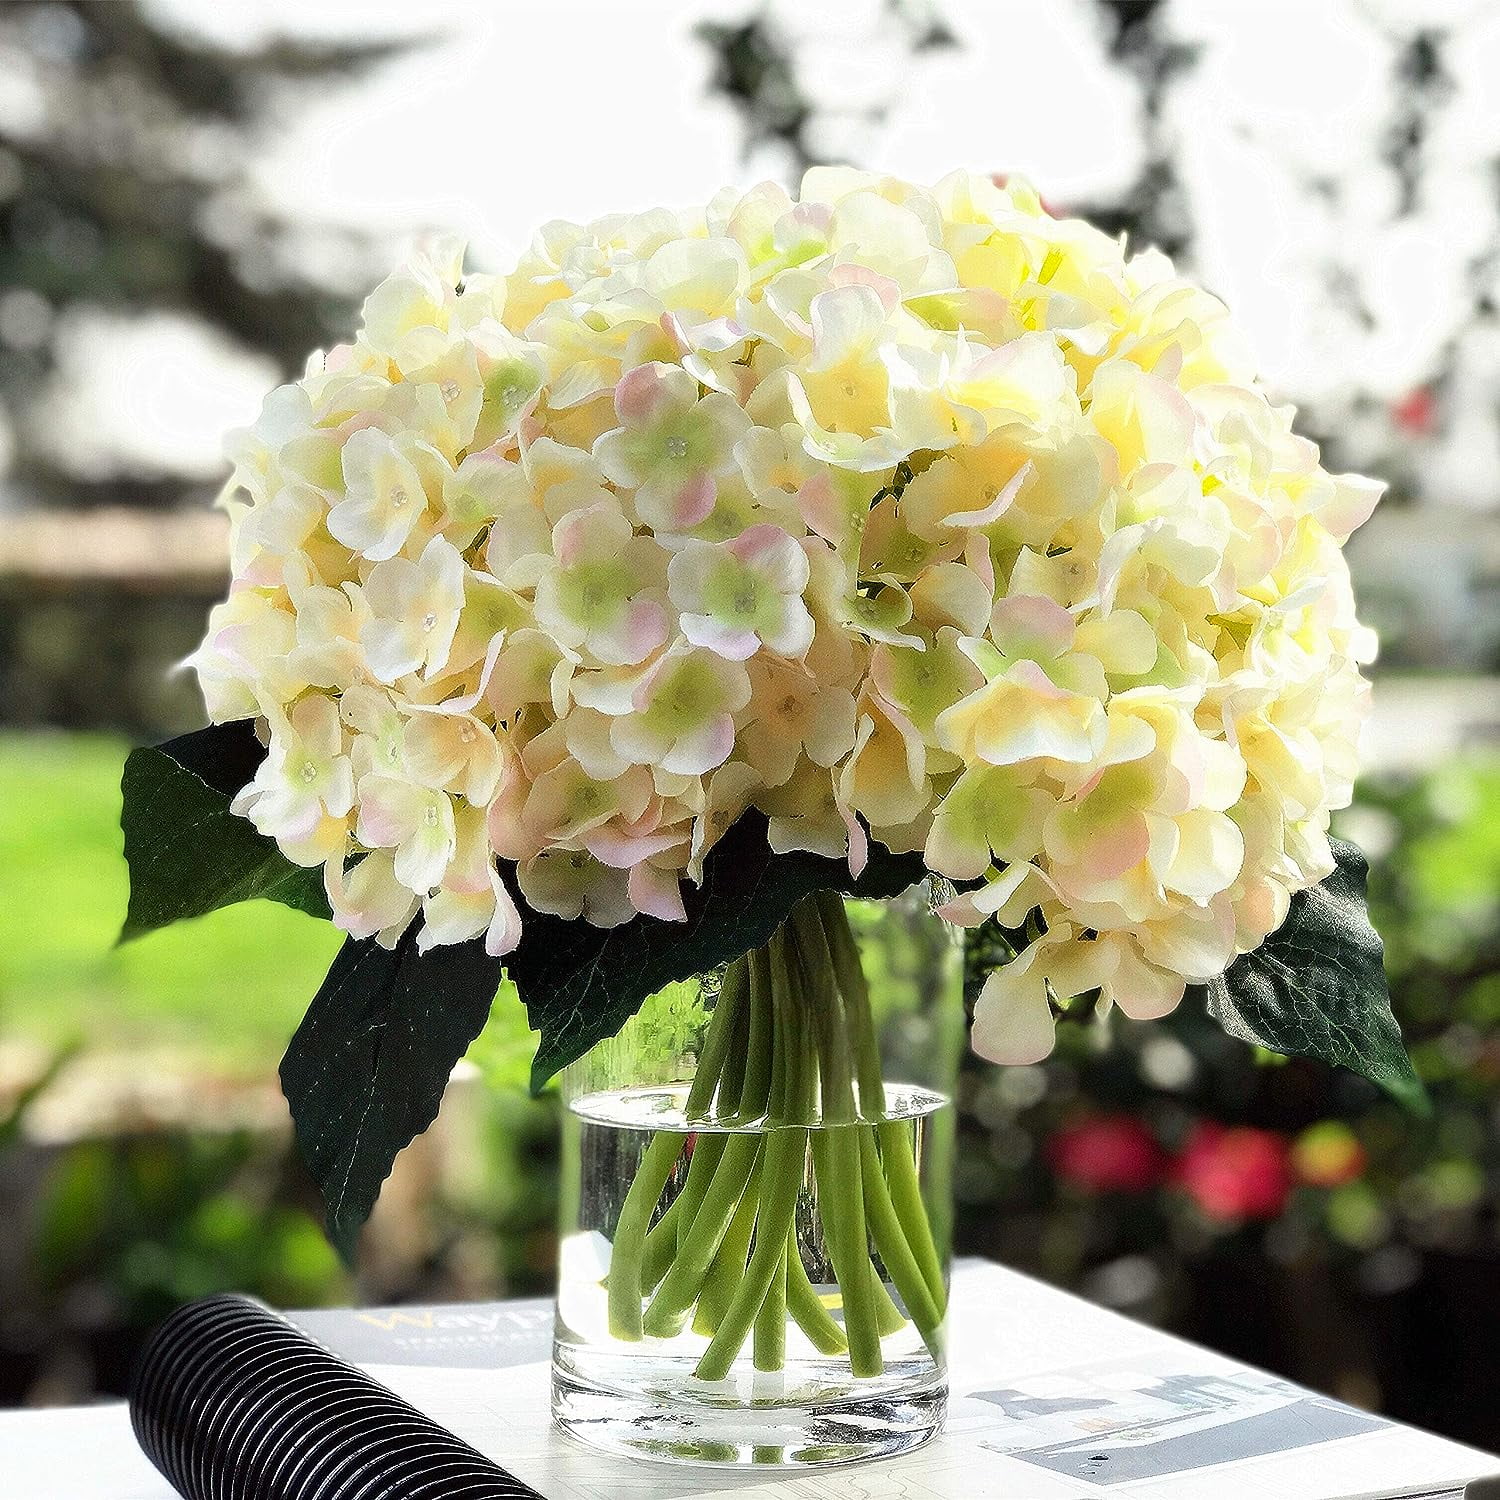 Sunjoy Tech Bouquet Holder - Flower Bouquet Holder, Bridal Bouquet Handle  for Flower Arrangement Wedding Bouquet Supplies, Green Foam, 3.4 x 7 x 3.4